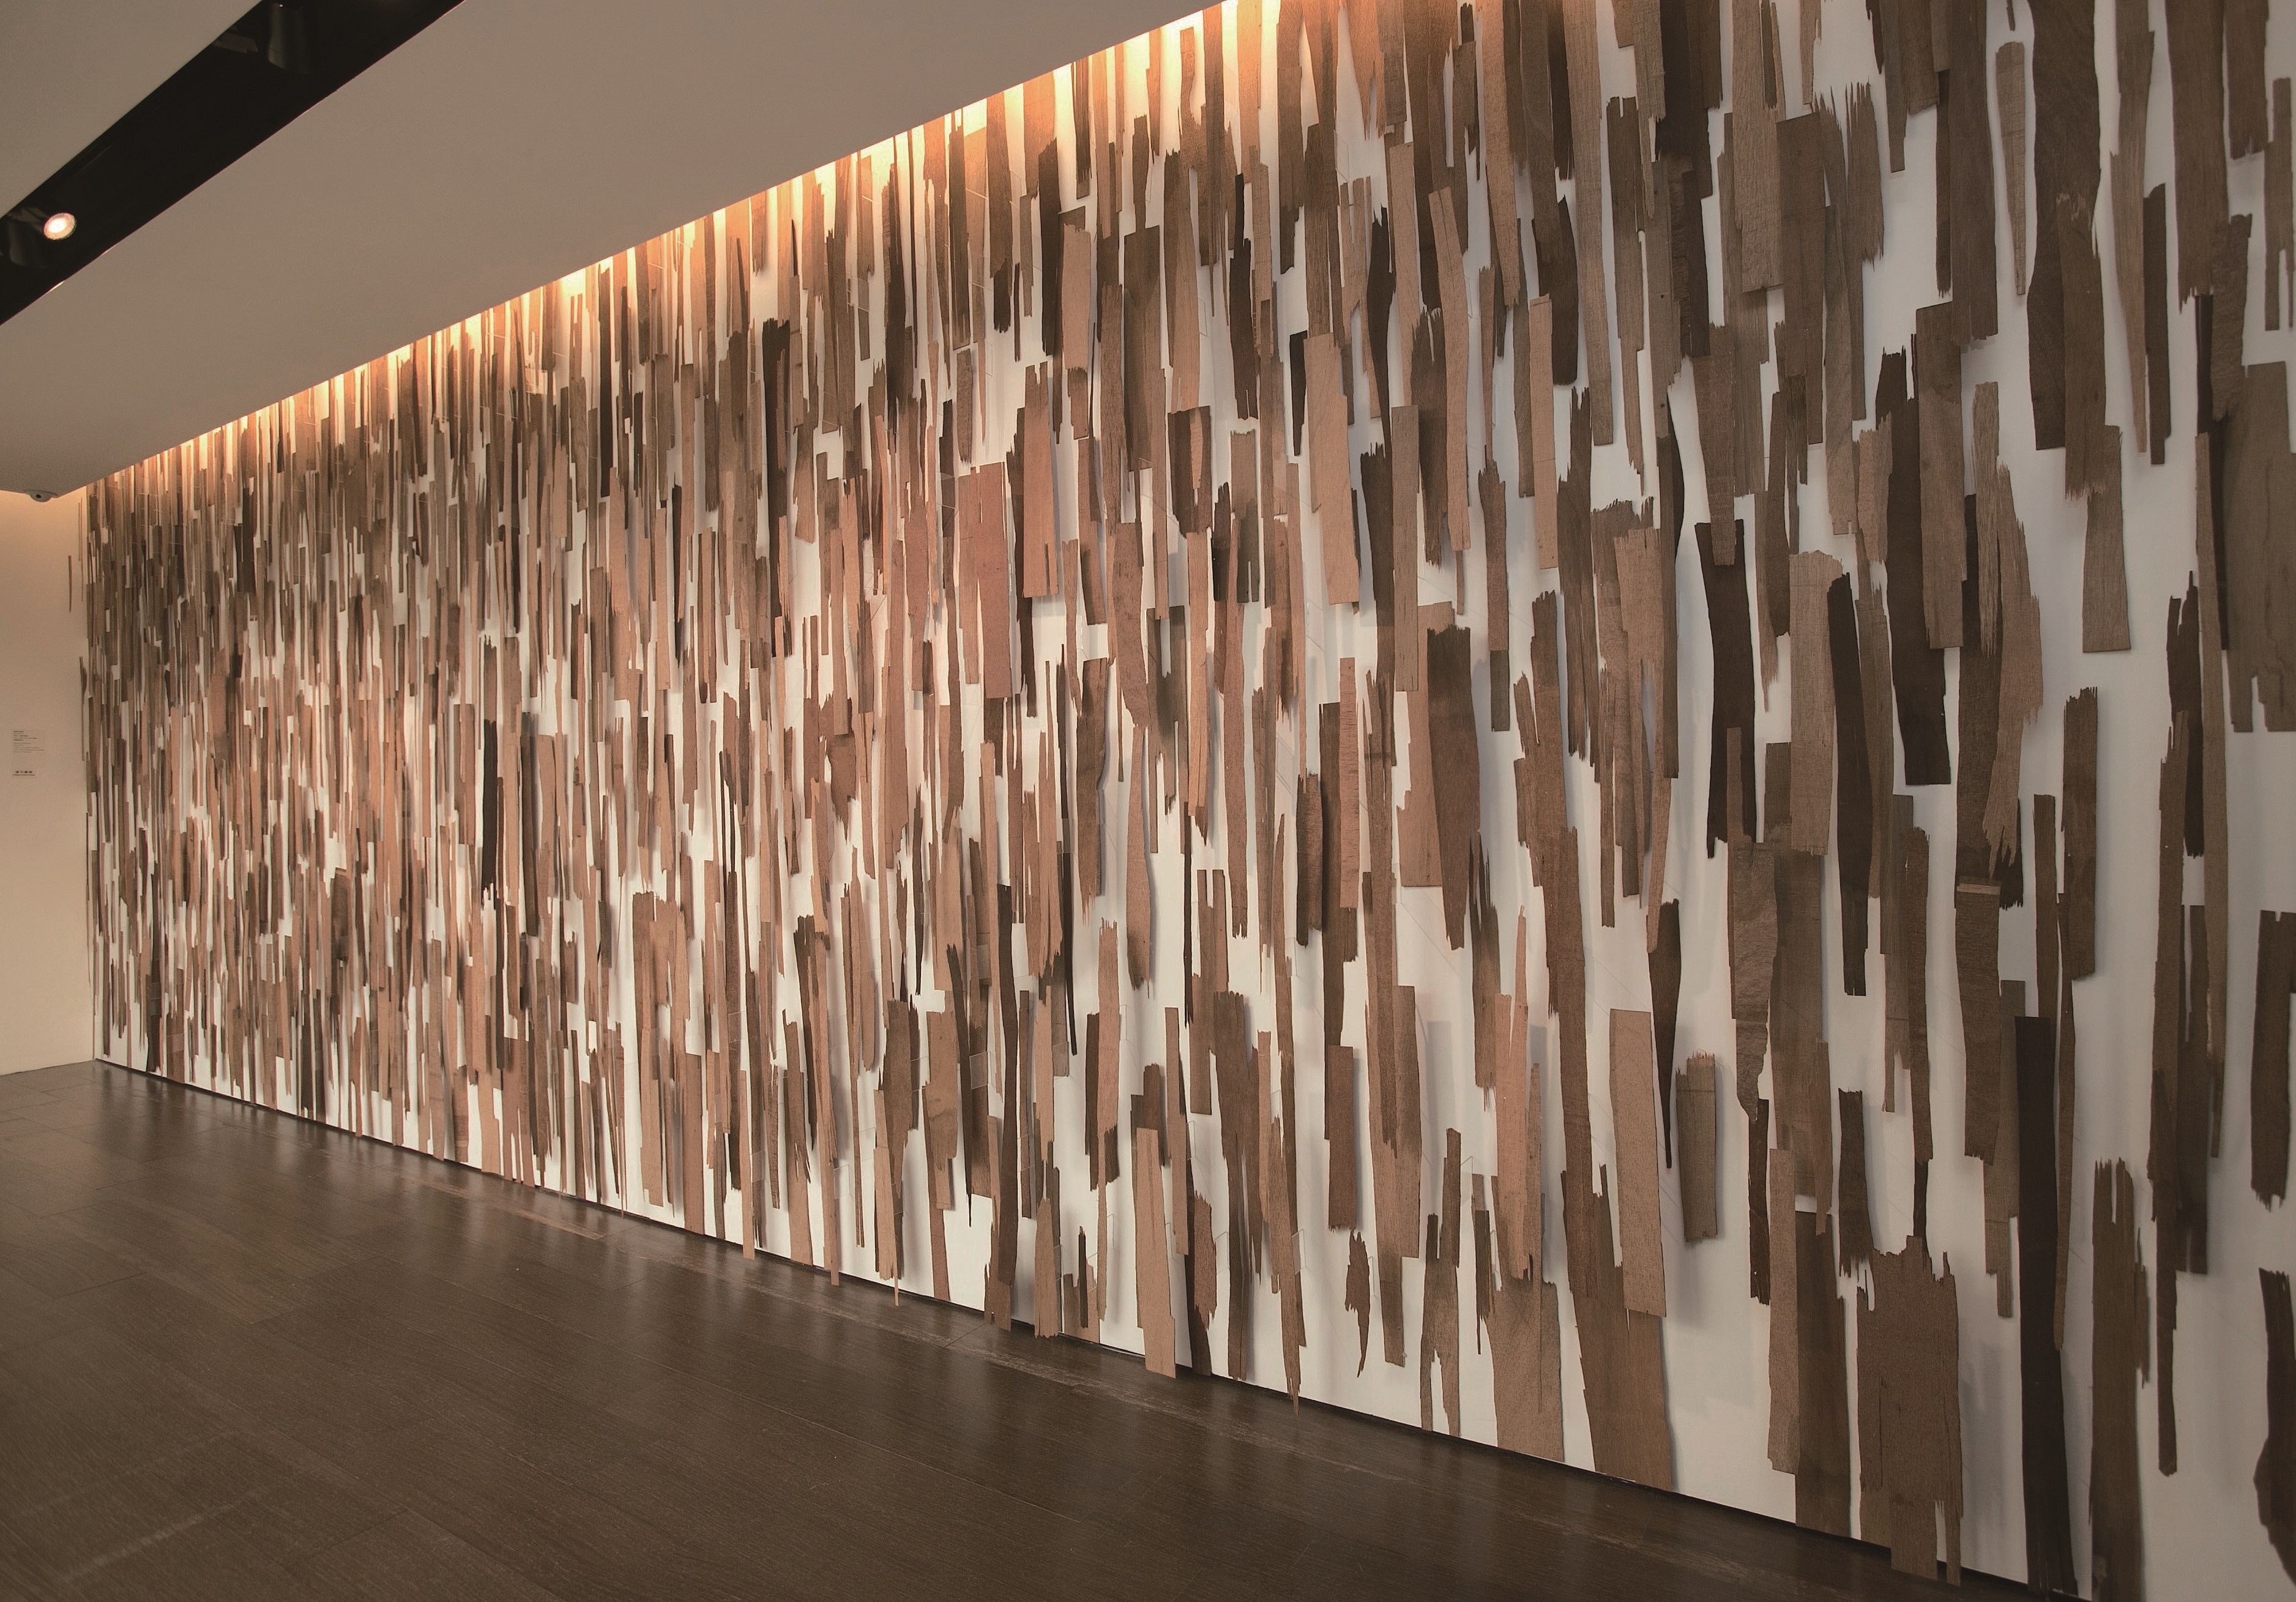 木料/現地裝置，248x665cm（尺寸可變），2012國立台灣美術館收藏（圖片提供/路易威登）